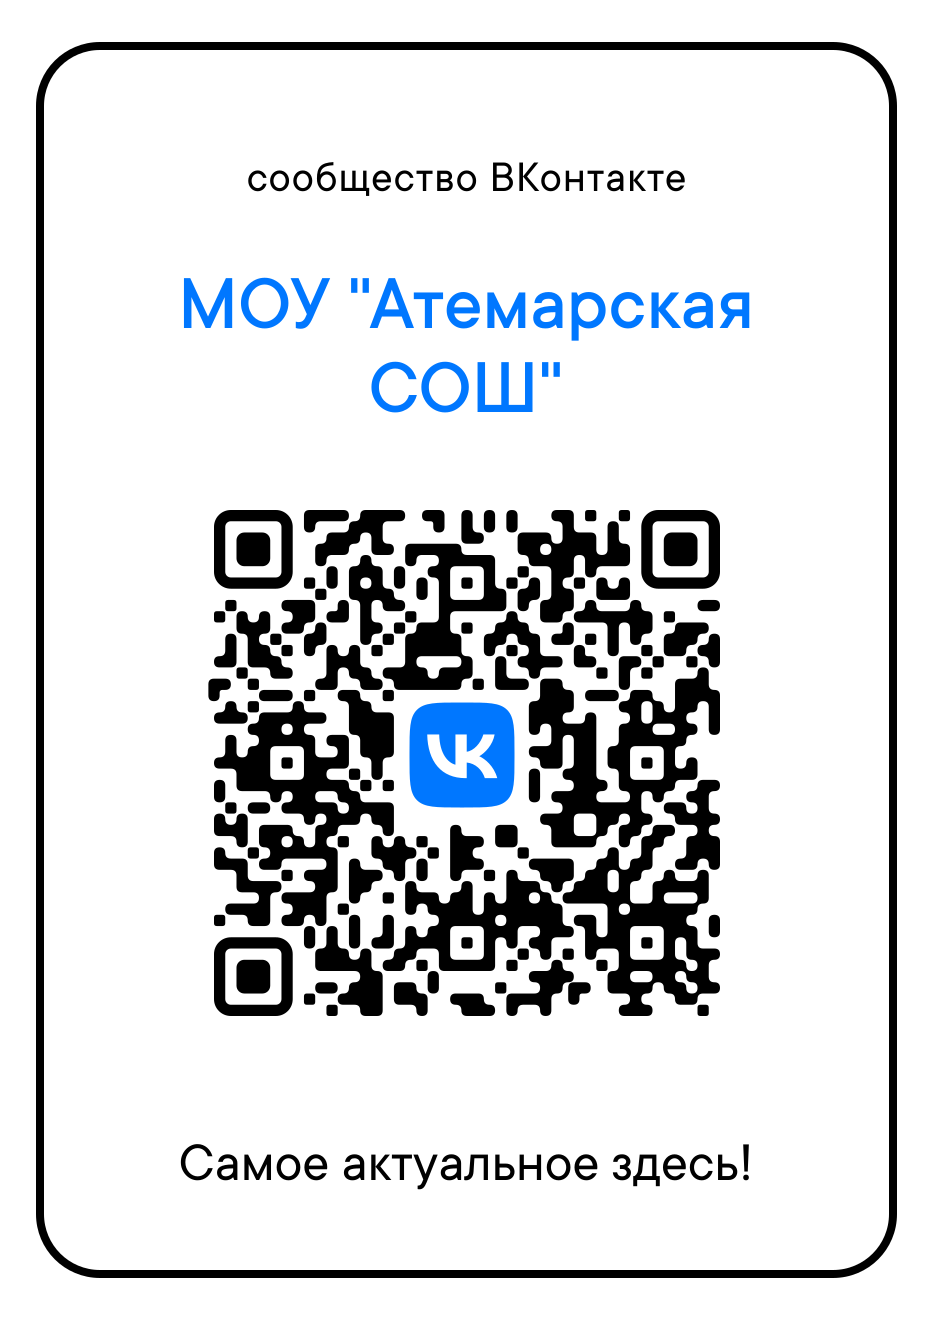 Сообщество МОУ &amp;quot;Атемарская СОШ&amp;quot; ВКонтакте.